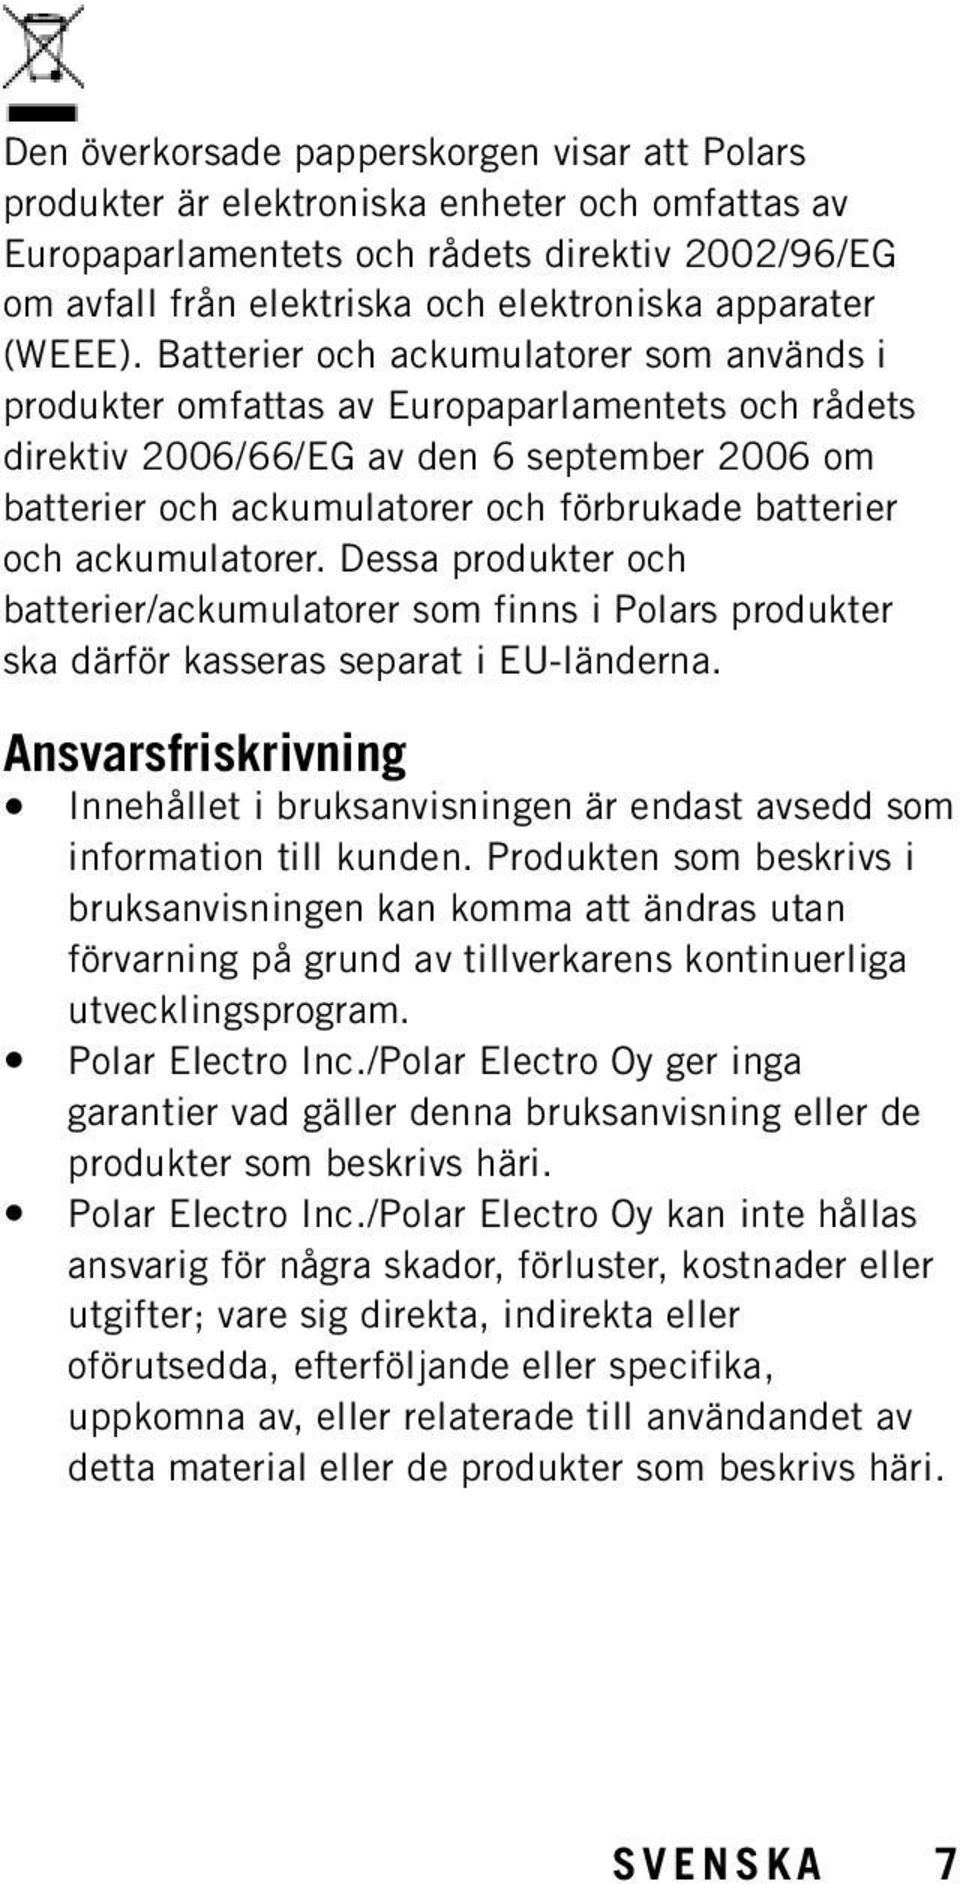 Batterier och ackumulatorer som används i produkter omfattas av Europaparlamentets och rådets direktiv 2006/66/EG av den 6 september 2006 om batterier och ackumulatorer och förbrukade batterier och